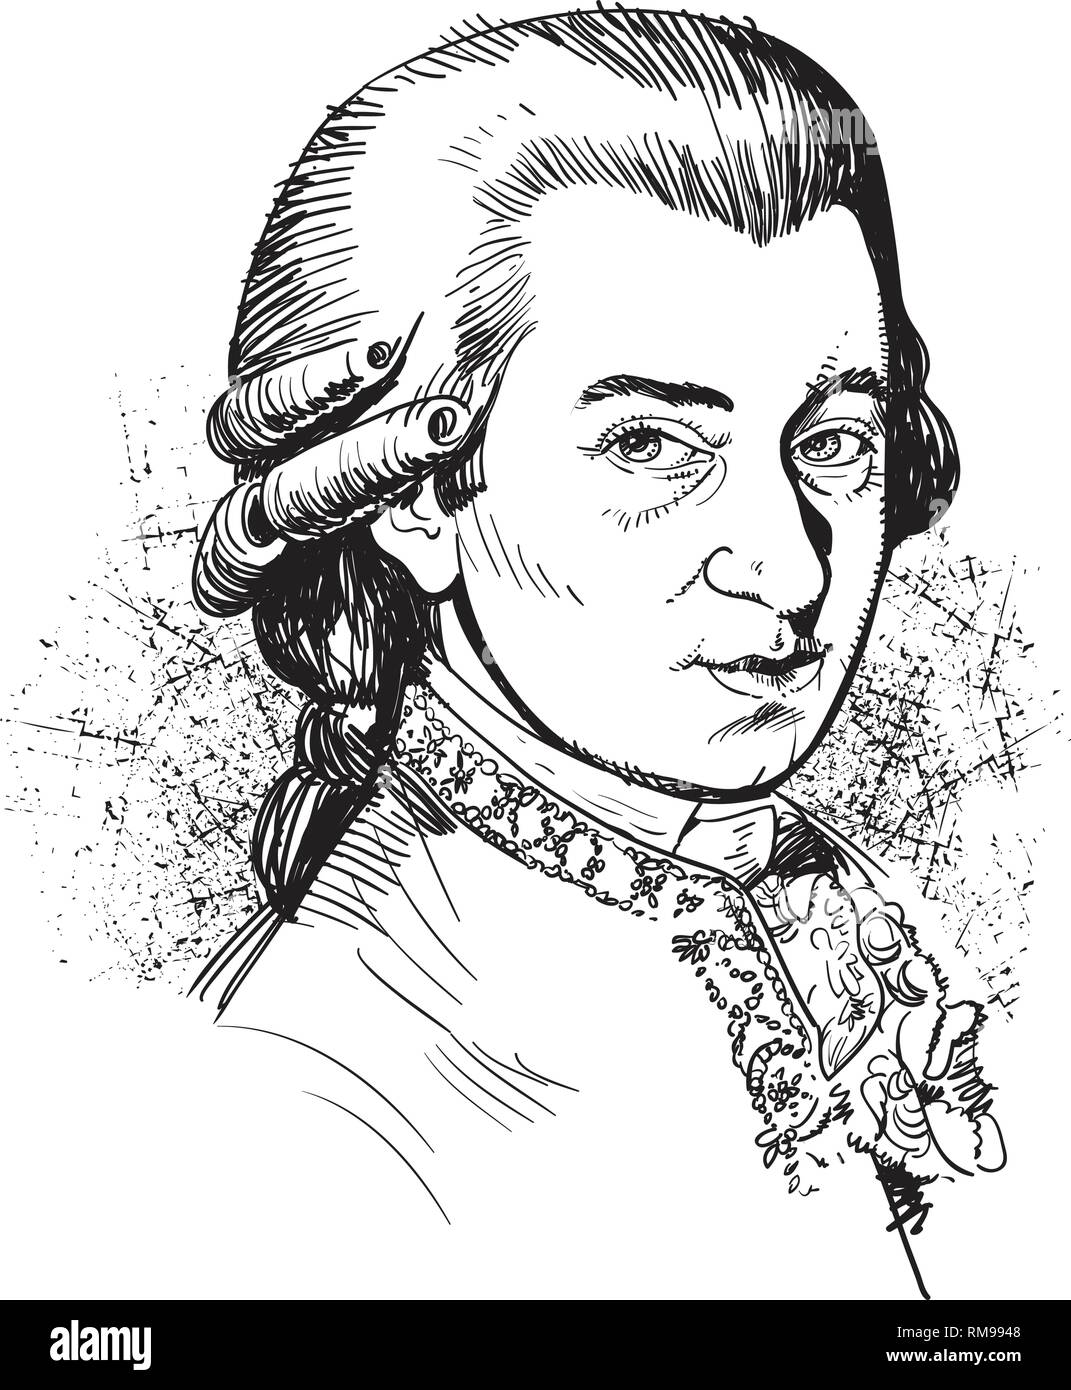 Wolfgang Amadeus Mozart Portrait im Einklang Art Illustration. Er war fruchtbar und einflussreichsten Komponisten der klassischen Musik Ära. Stock Vektor